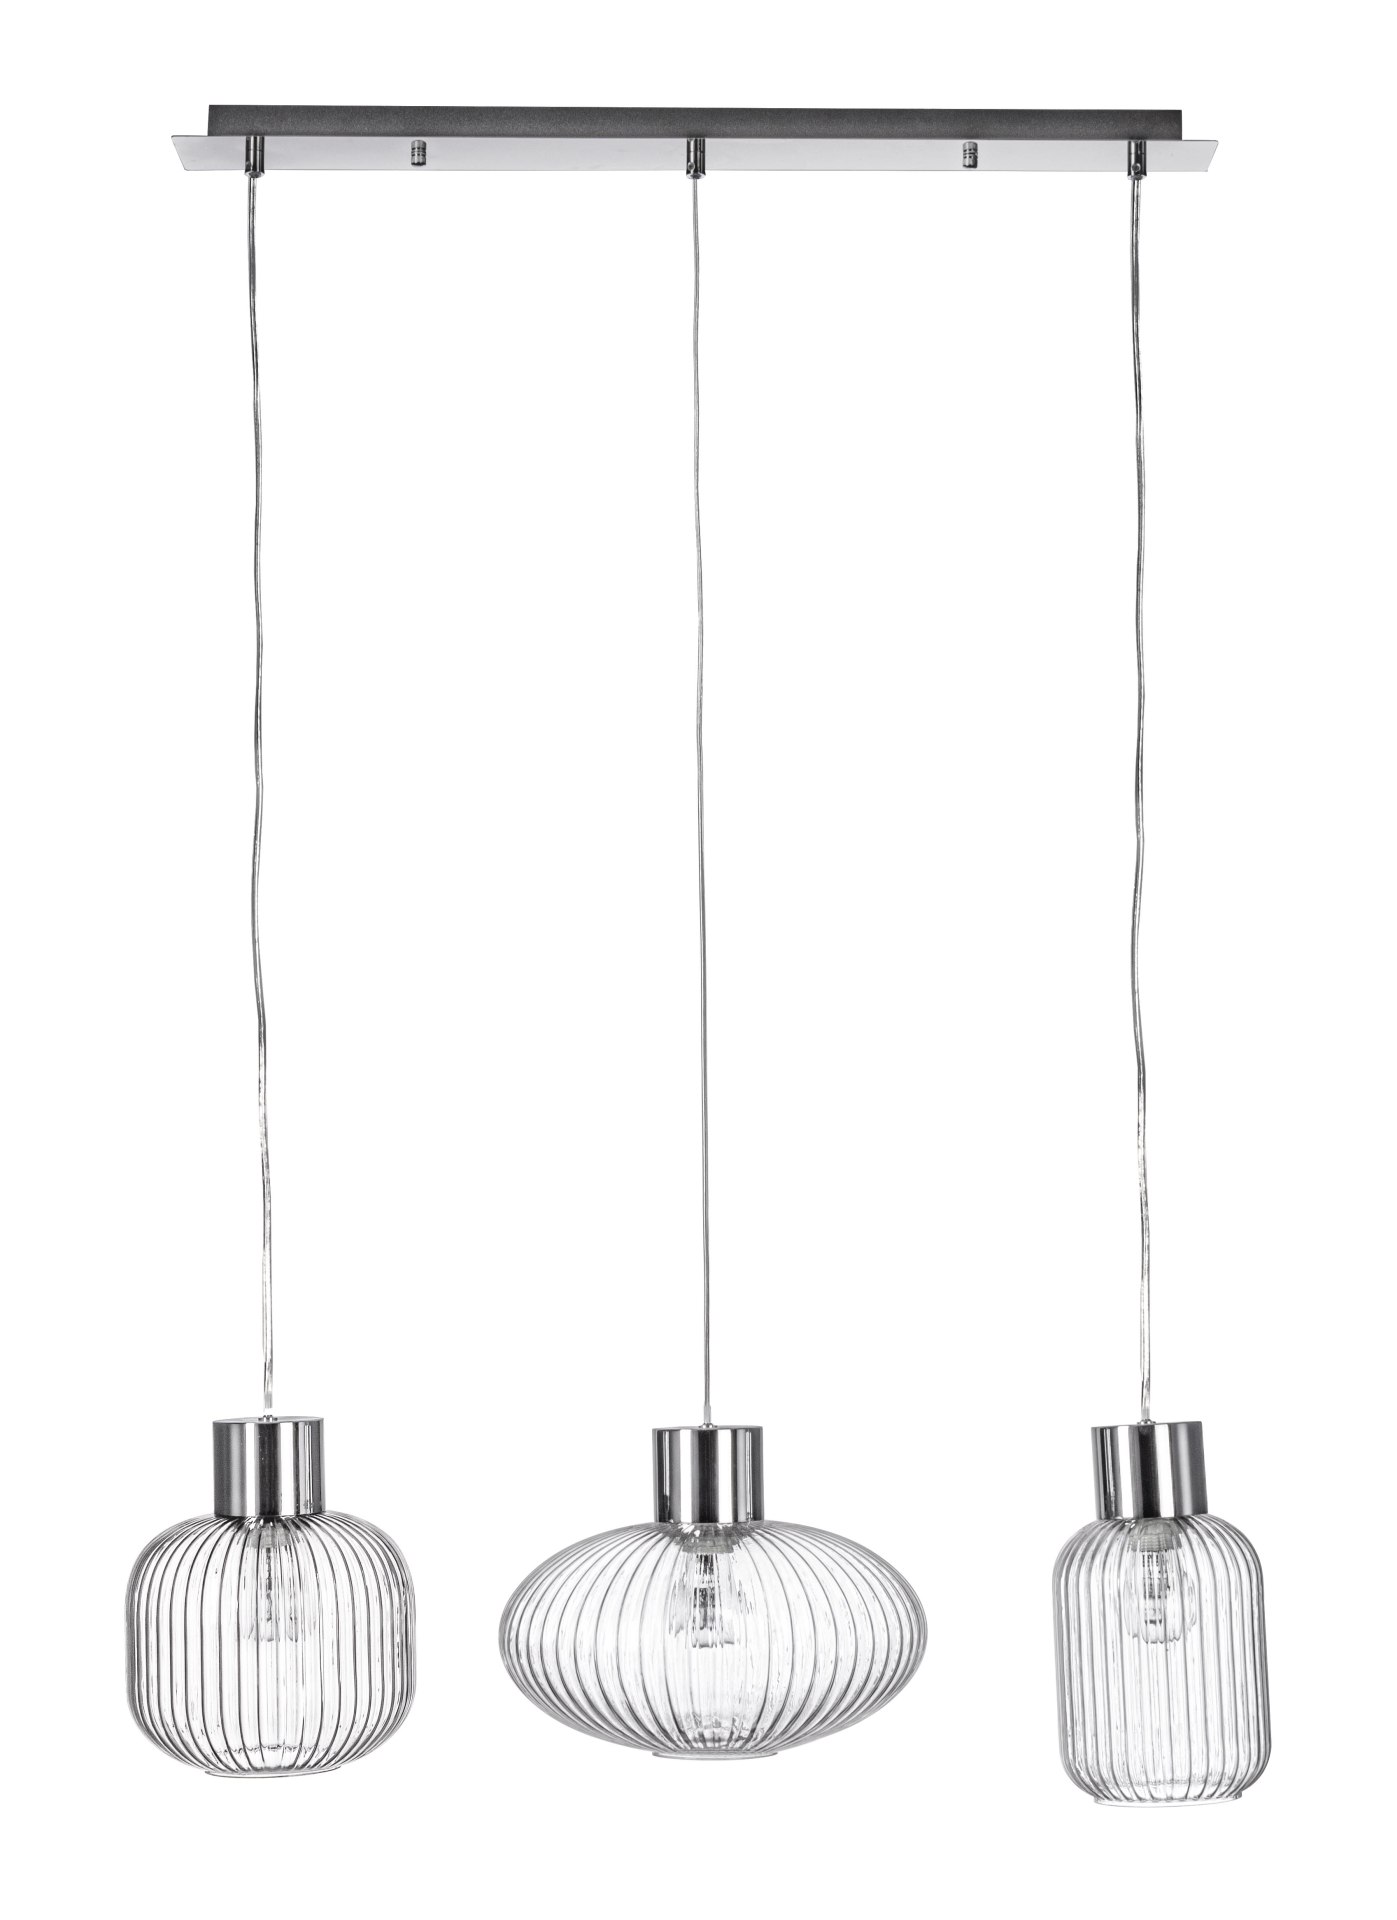 Die Hängeleuchte Showy überzeugt mit ihrem modernen Design. Gefertigt wurde sie aus Metall, welches einen silberne Farbton besitzt. Die Lampenschirme sind aus Glas und sind klar. Die Lampe besitzt eine Höhe von 120 cm.